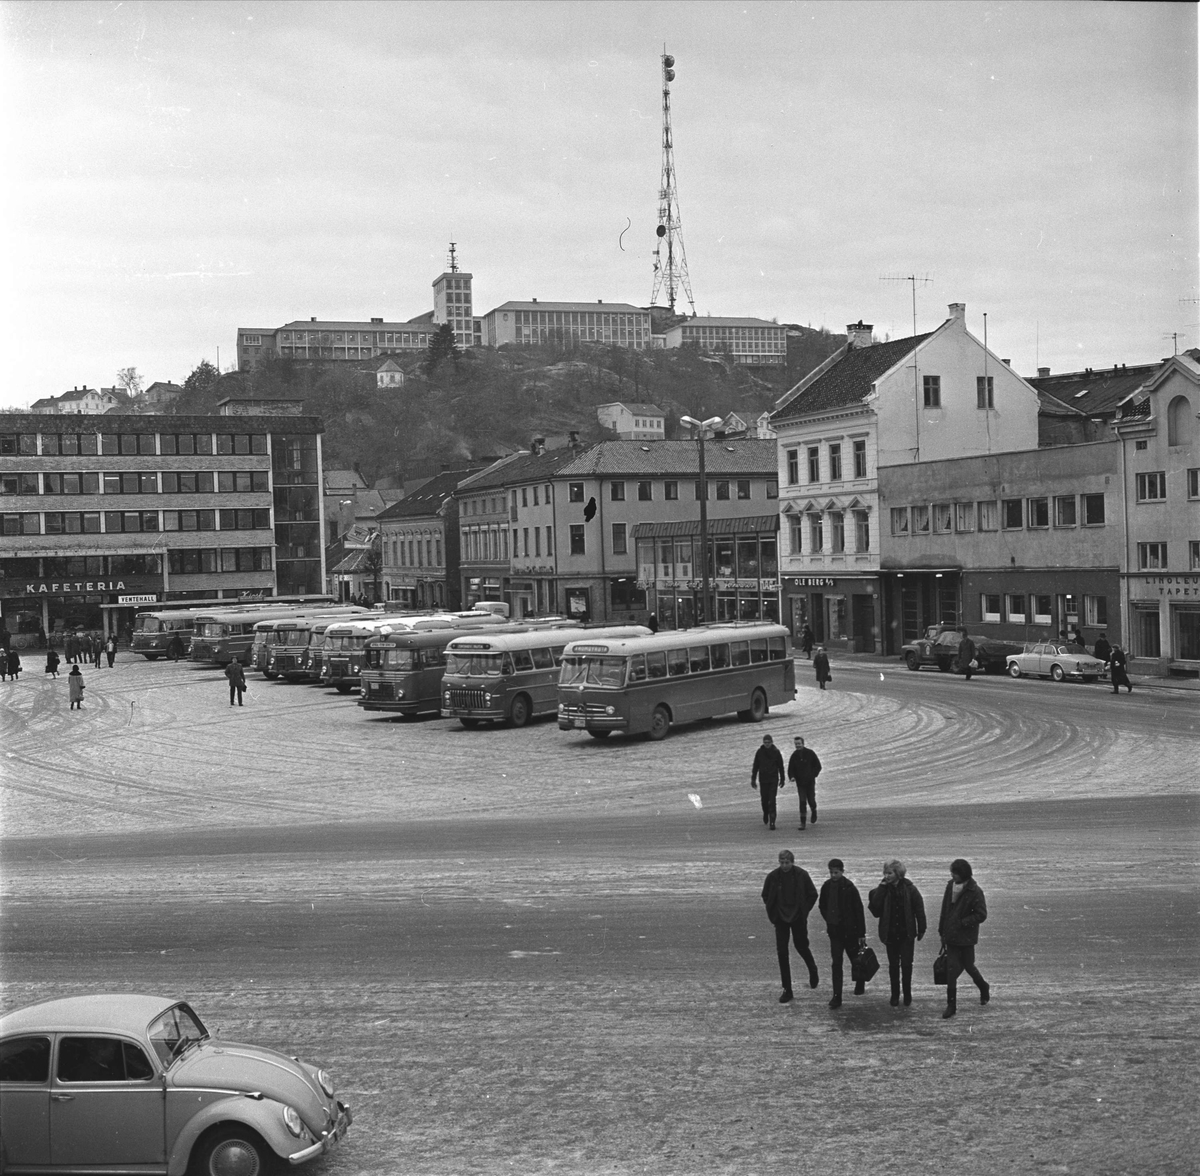 Arendal. Rutebilstasjonen med Peder Thomassons gate og Sjømannsskolen i bakgrunnen. Busser oppstilt.